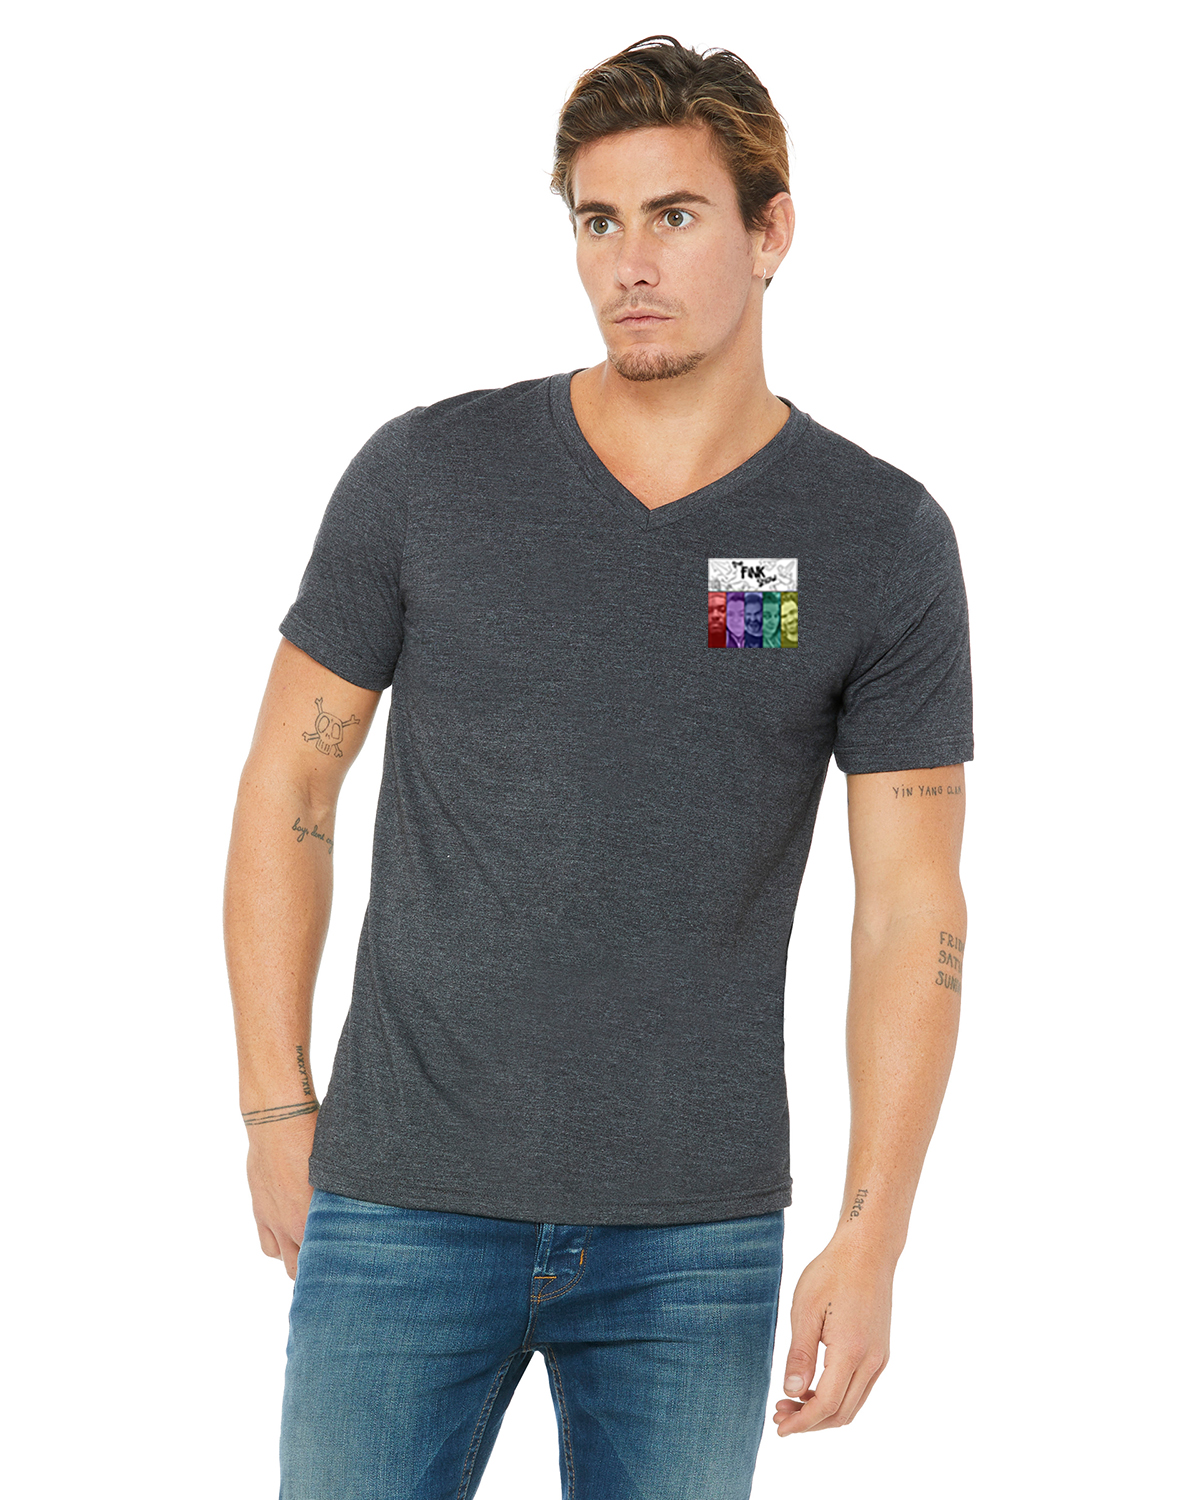 Fink Show Men's V-Neck T-shirt Pocket Sized V3.0 Logo